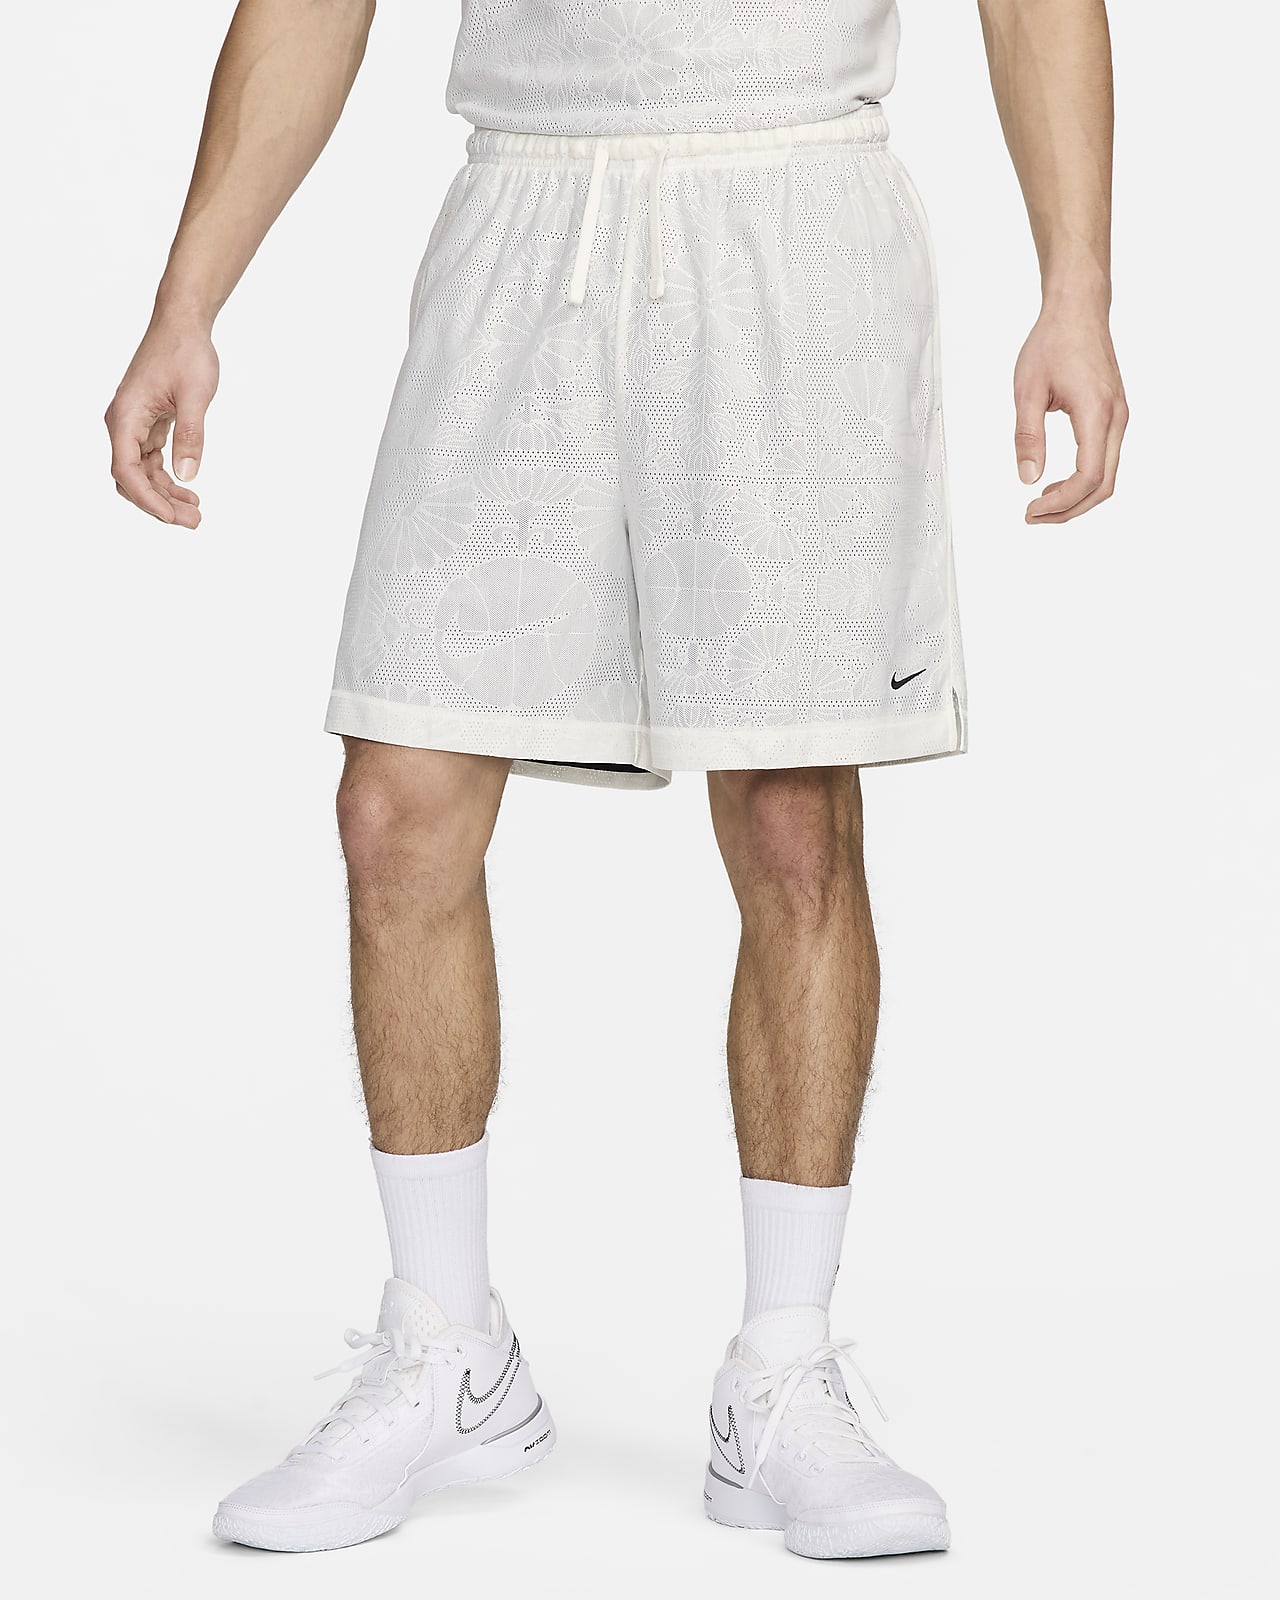 Ανδρικό σορτς μπάσκετ διπλής όψης Dri-FIT Nike Standard Issue 15 cm